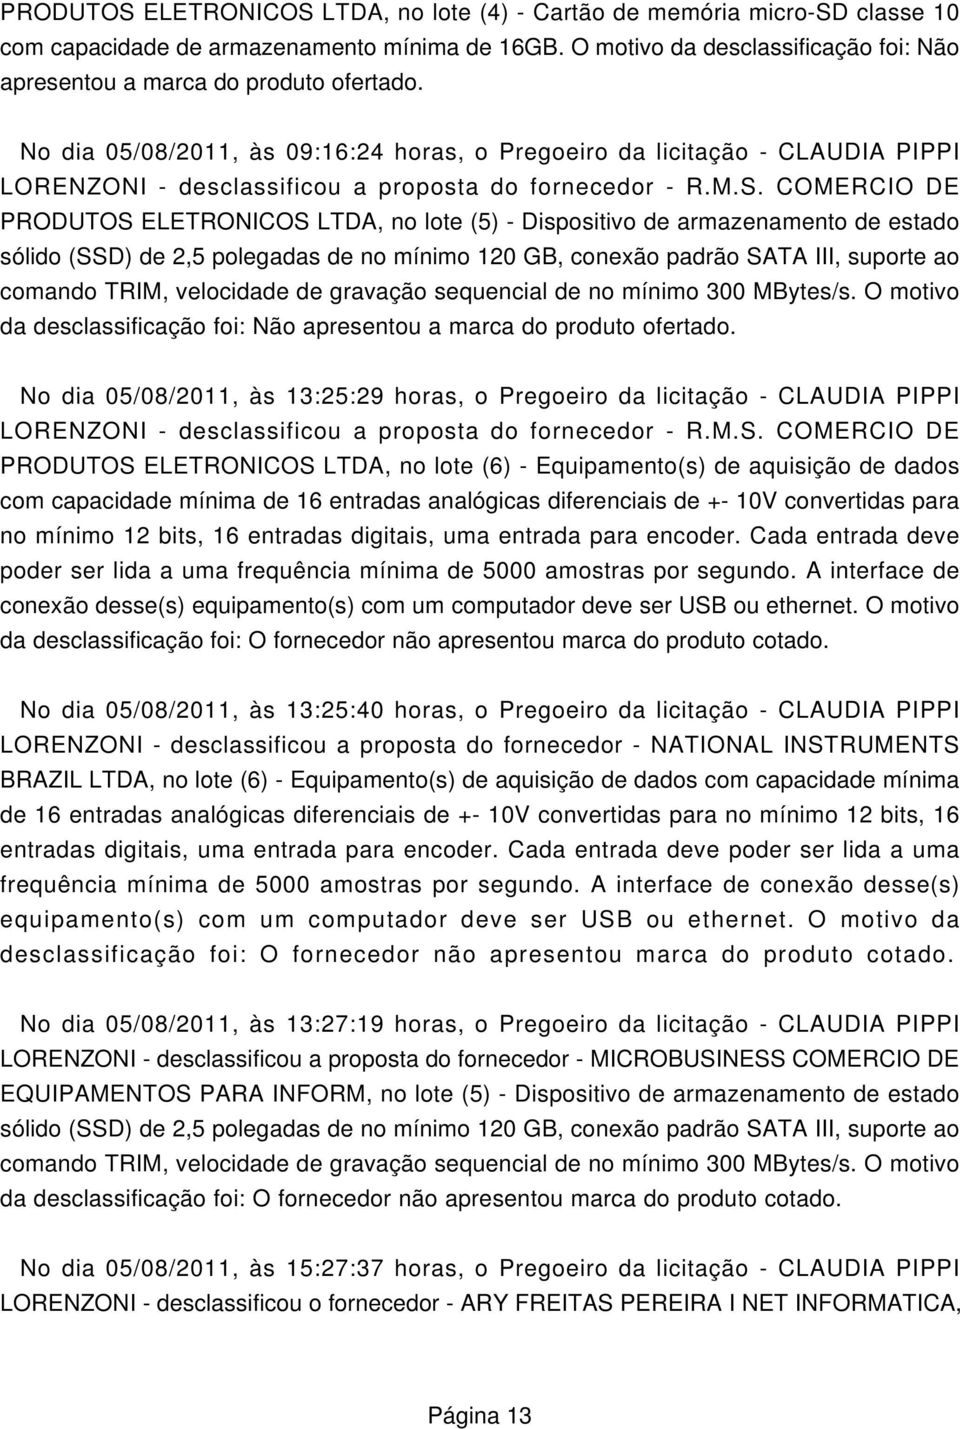 No dia 05/08/2011, às 09:16:24 horas, o Pregoeiro da licitação - CLAUDIA PIPPI LORENZONI - desclassificou a proposta do fornecedor - R.M.S.